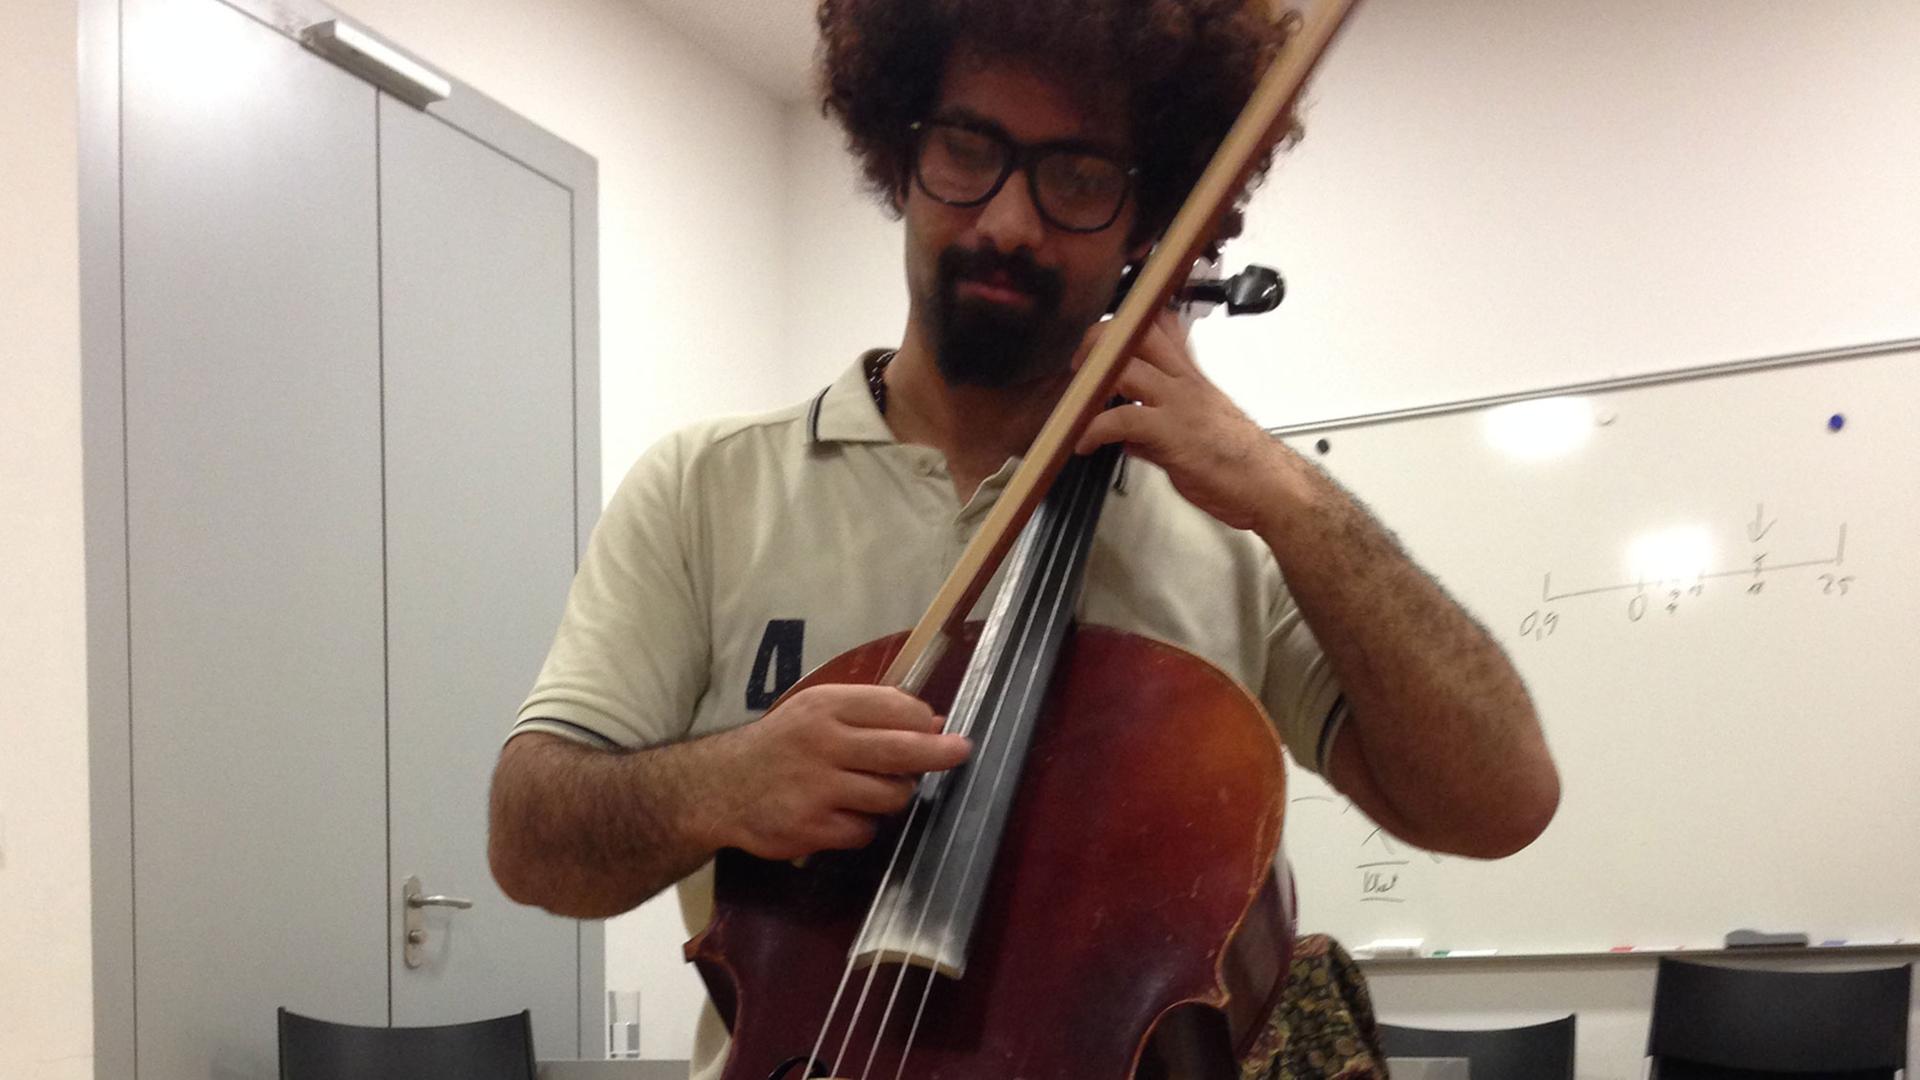 Der Cellist Akram ist Flüchtling,lebt in Dresden Neustadt und spielt in der Dresden-Neustädter-Blechbläserband "Banda Internationale" mit.